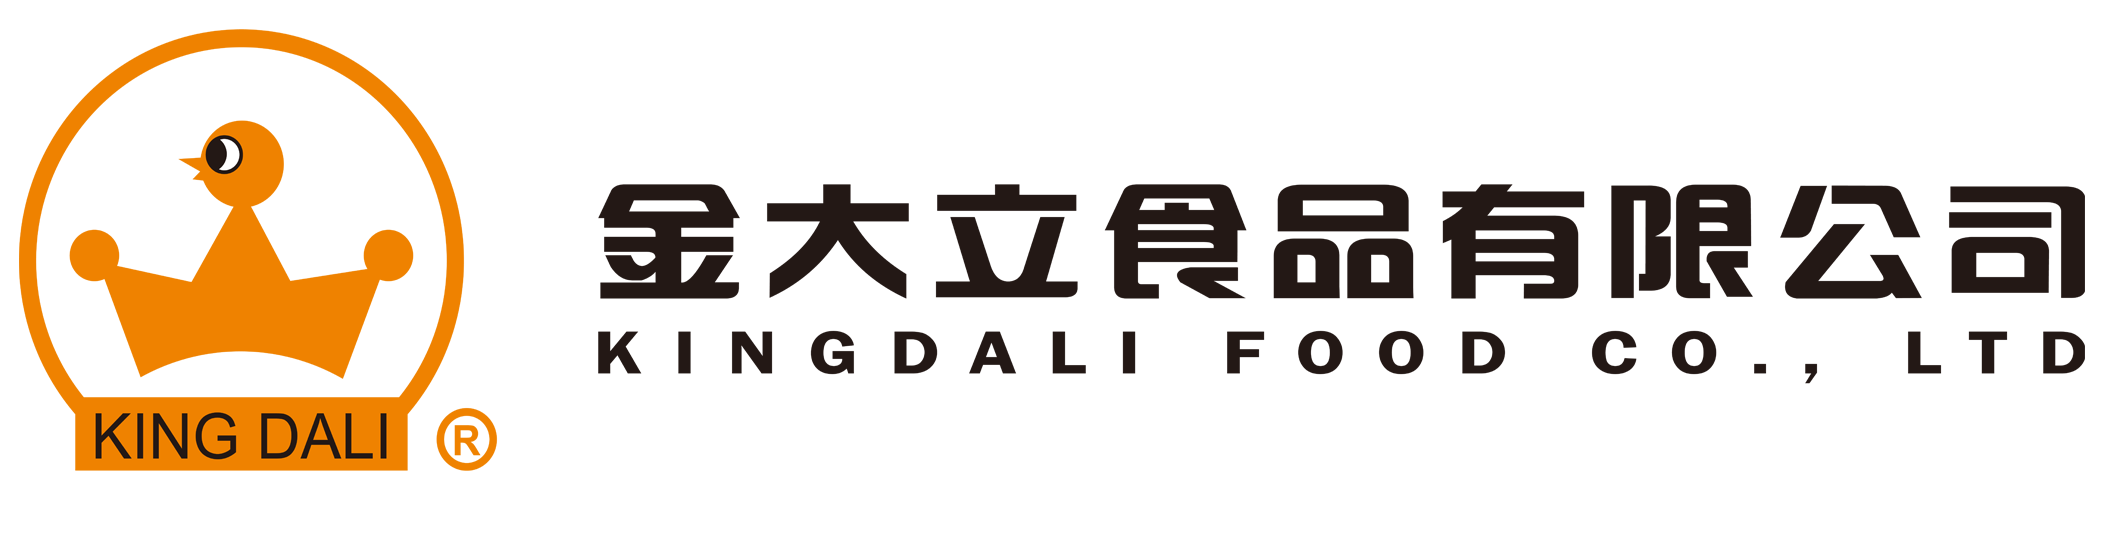 金大立食品有限公司　Kingdali Food Co. Ltd.